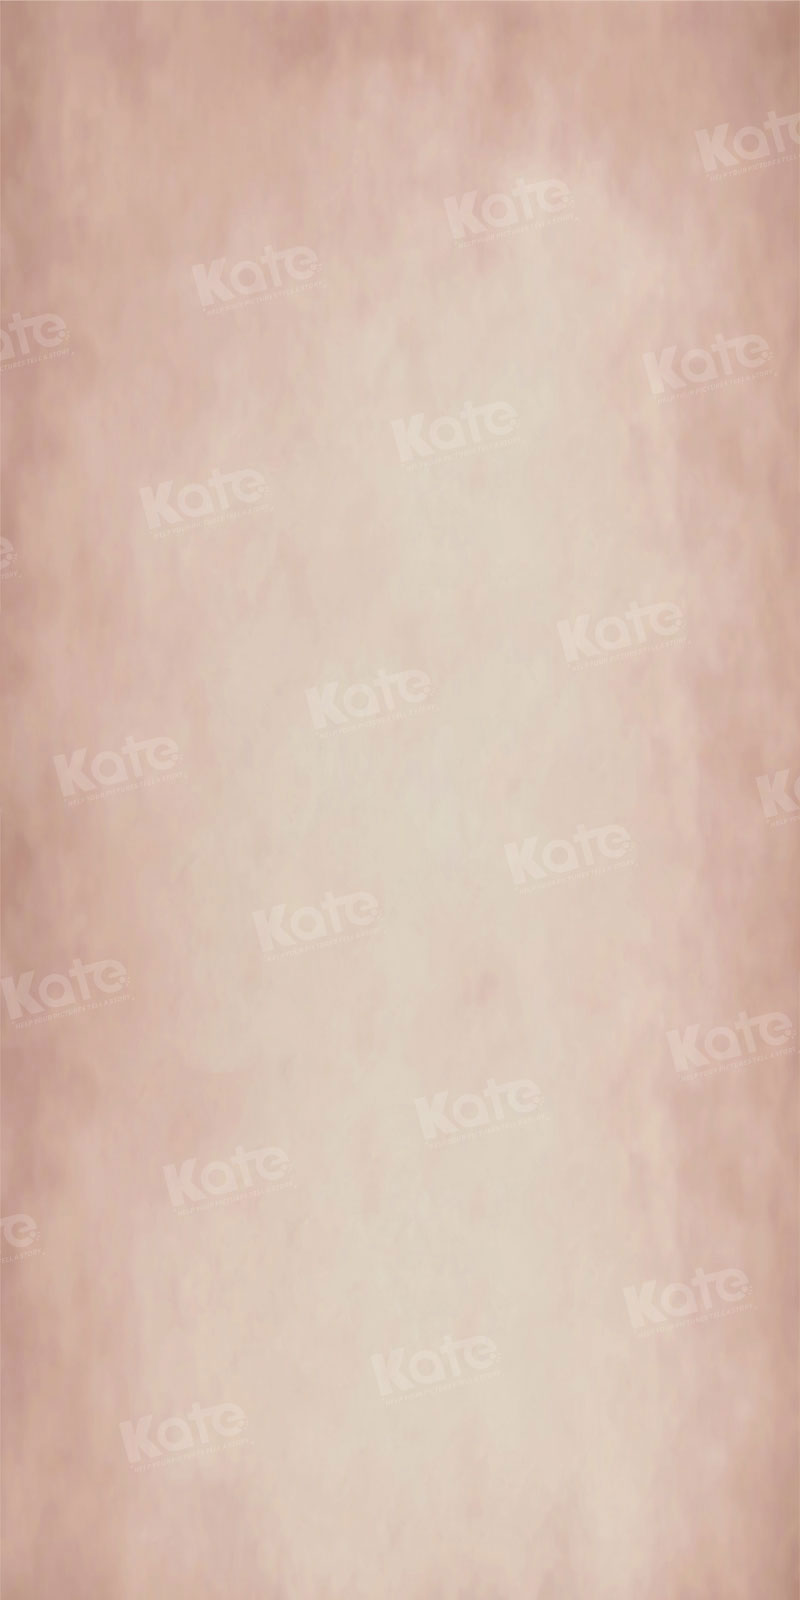 Kate Balayage Abstrait Rose clair Portrait Toile de fond pour la photographie